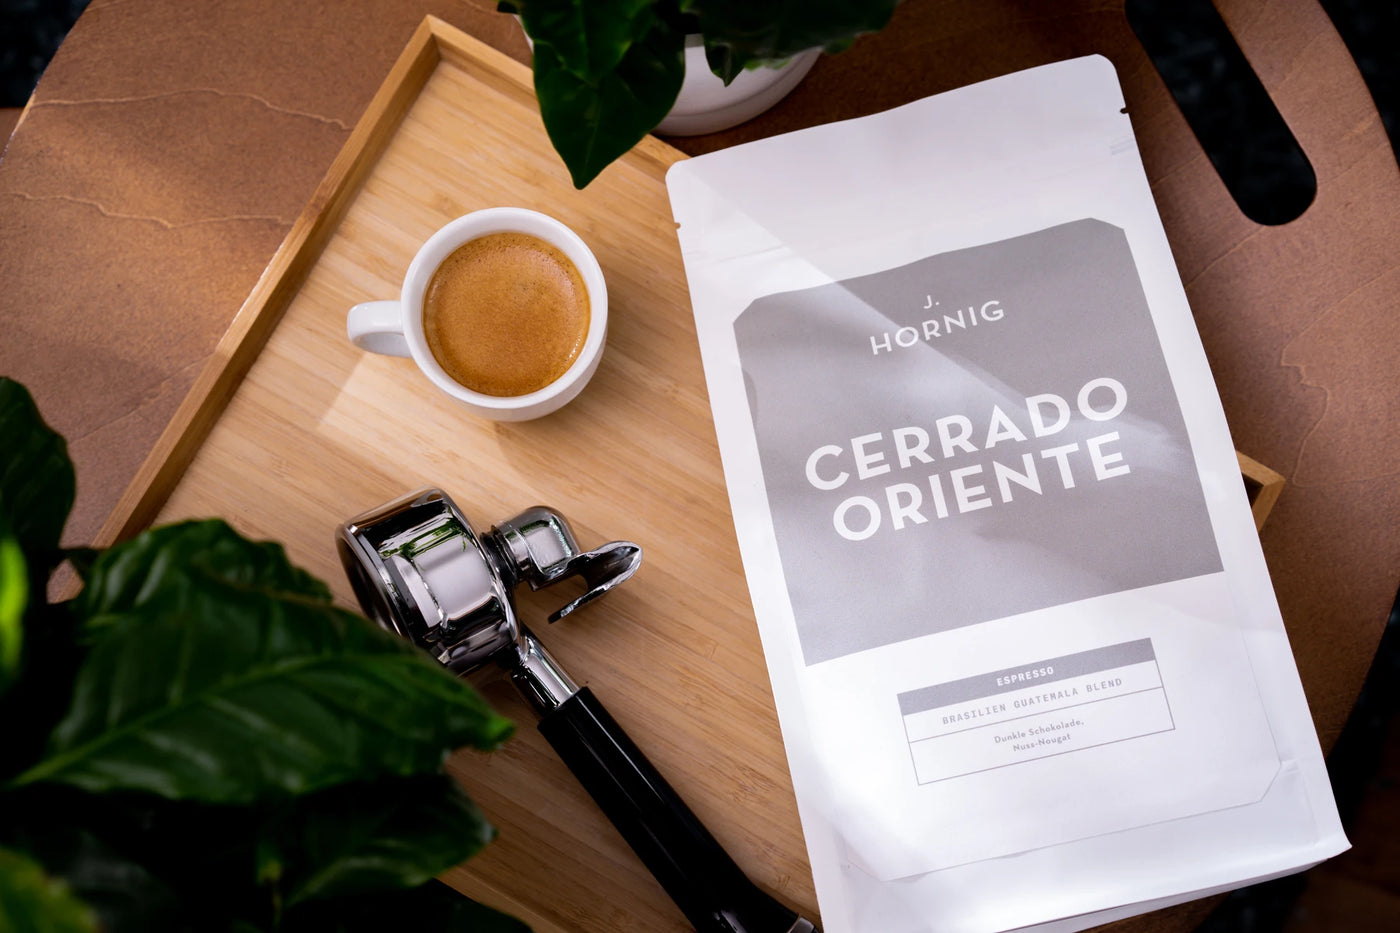 Eine Packung J. Hornig Spezialitätenkaffee Cerrado Oriente Espresso auf einem Holztablett mit einem Siebträger und einer Tasse Kaffee